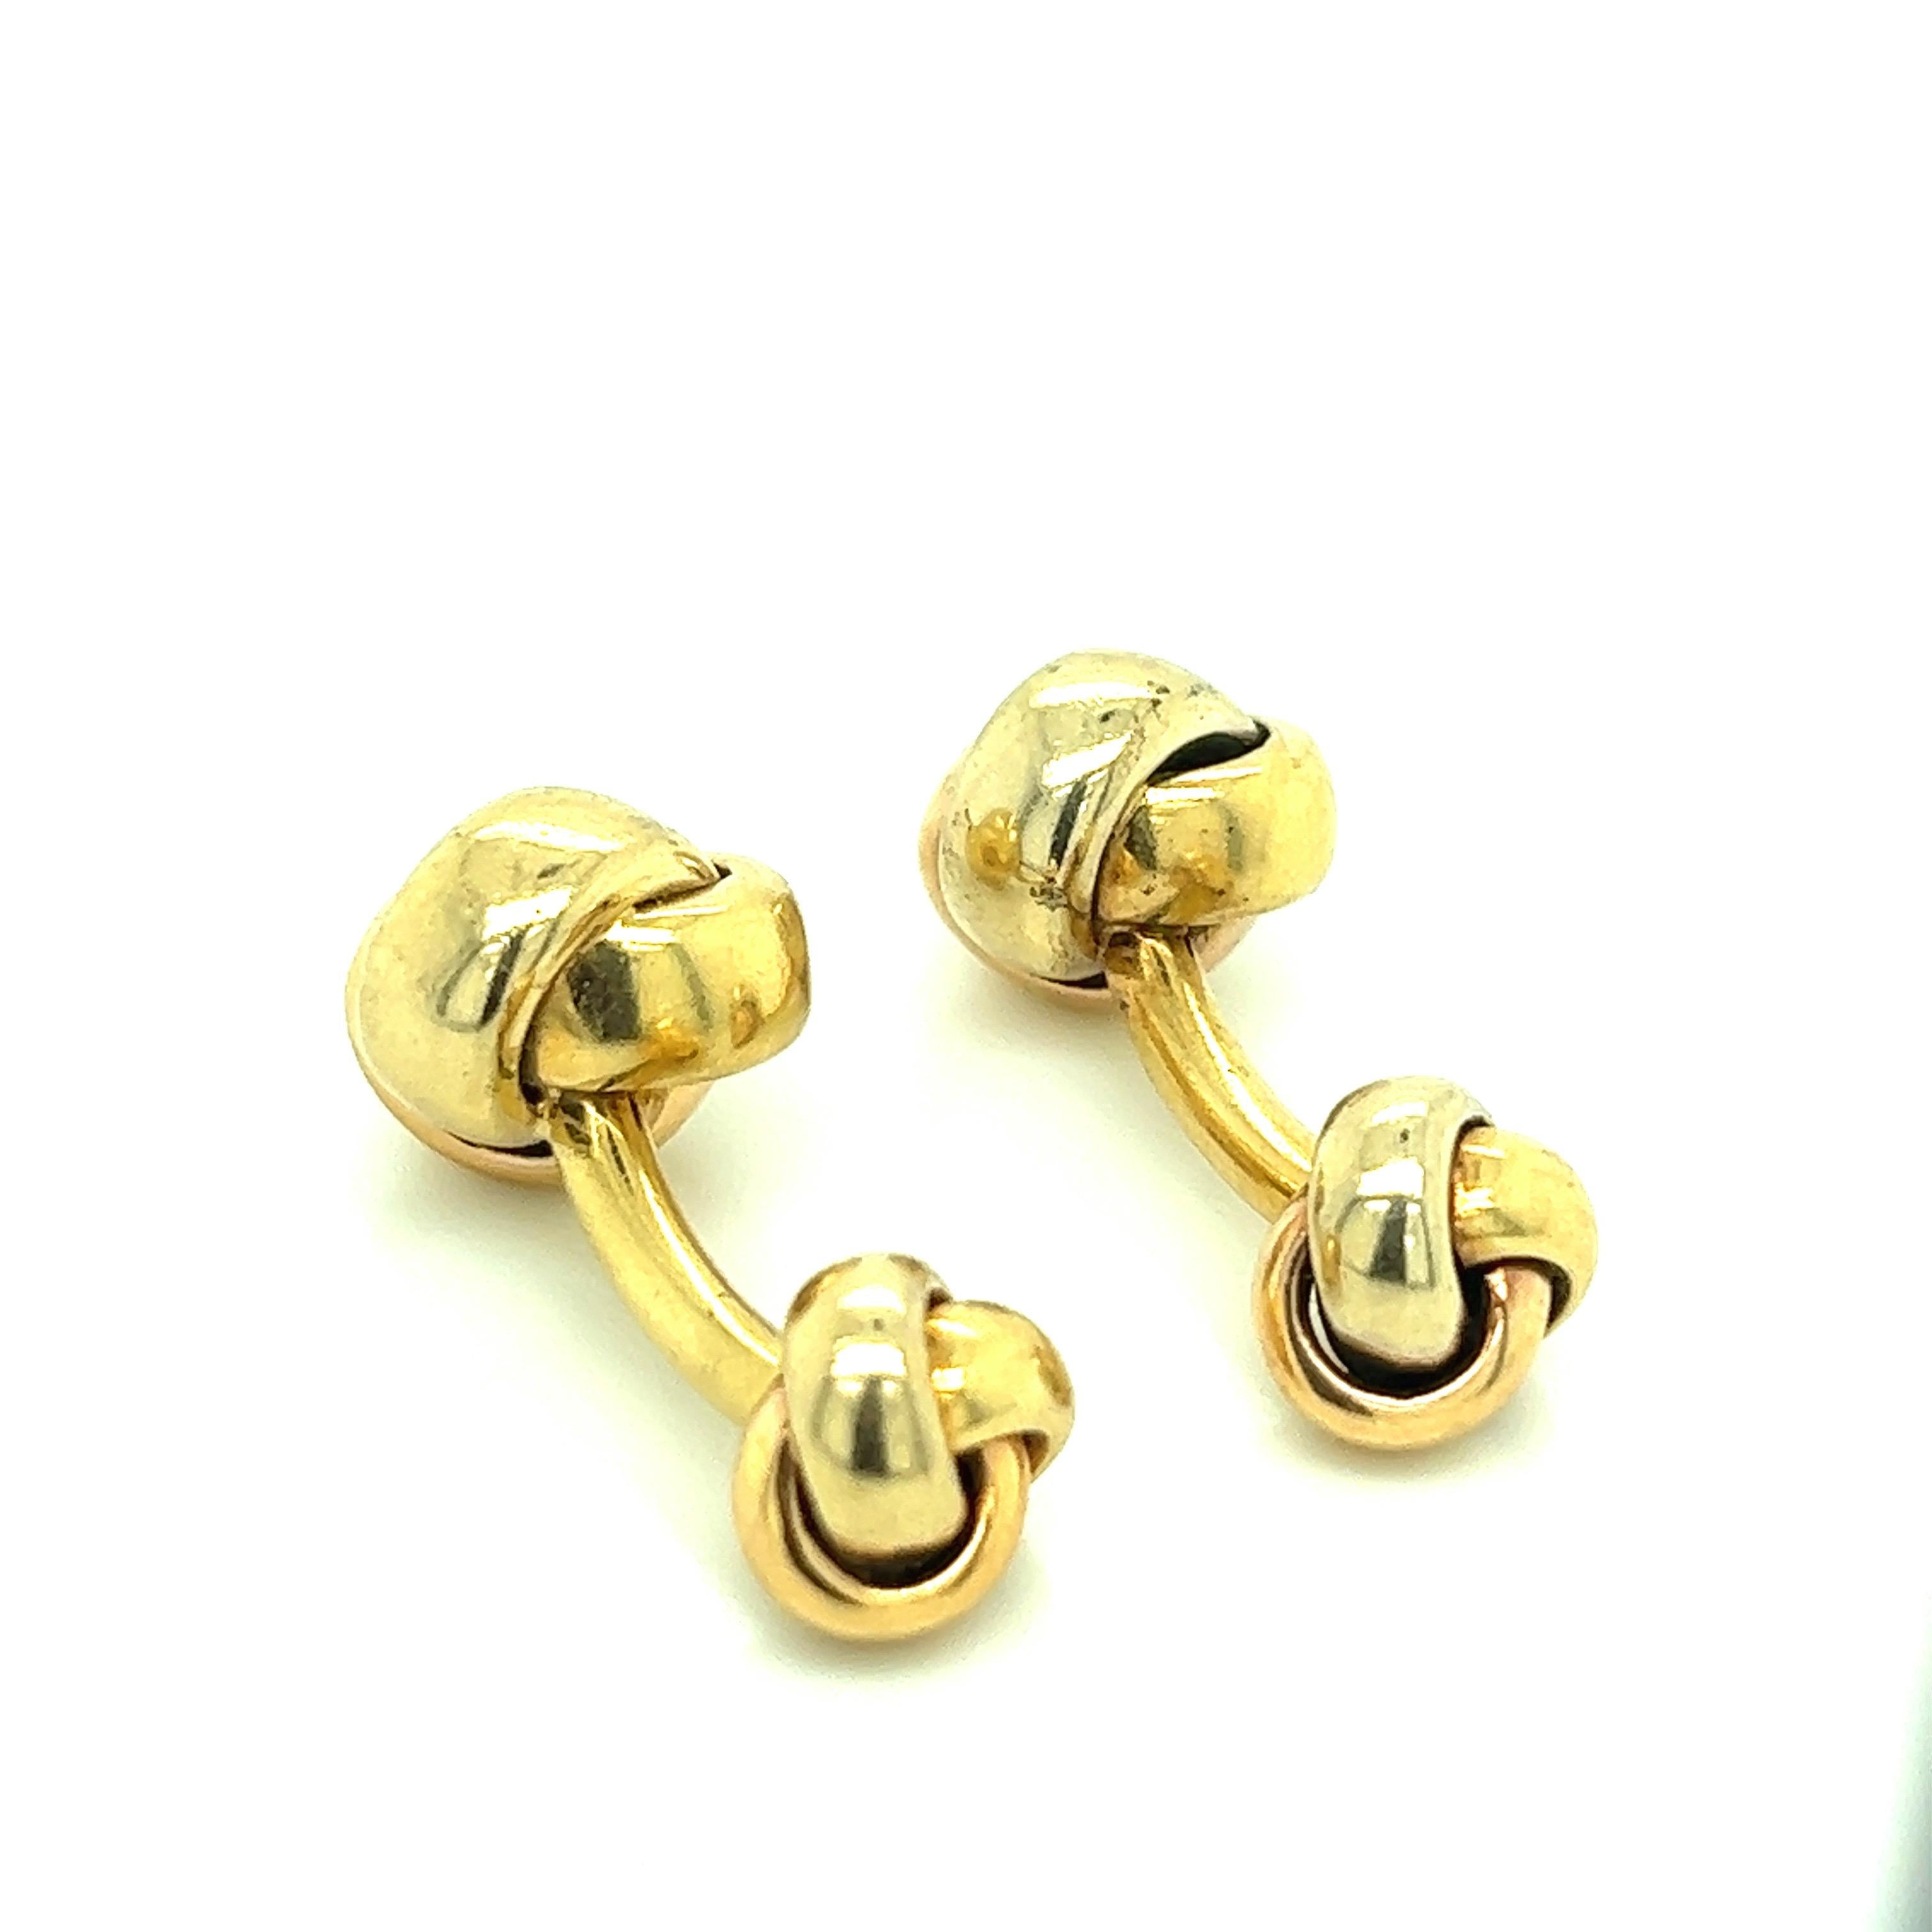 Cartier 18 karat yellow gold cufflinks with a knot motif. Marked: Cartier / 750. Total weight: 19.1 grams. Width: 0.5 inch. Length: 1.13 inch. 